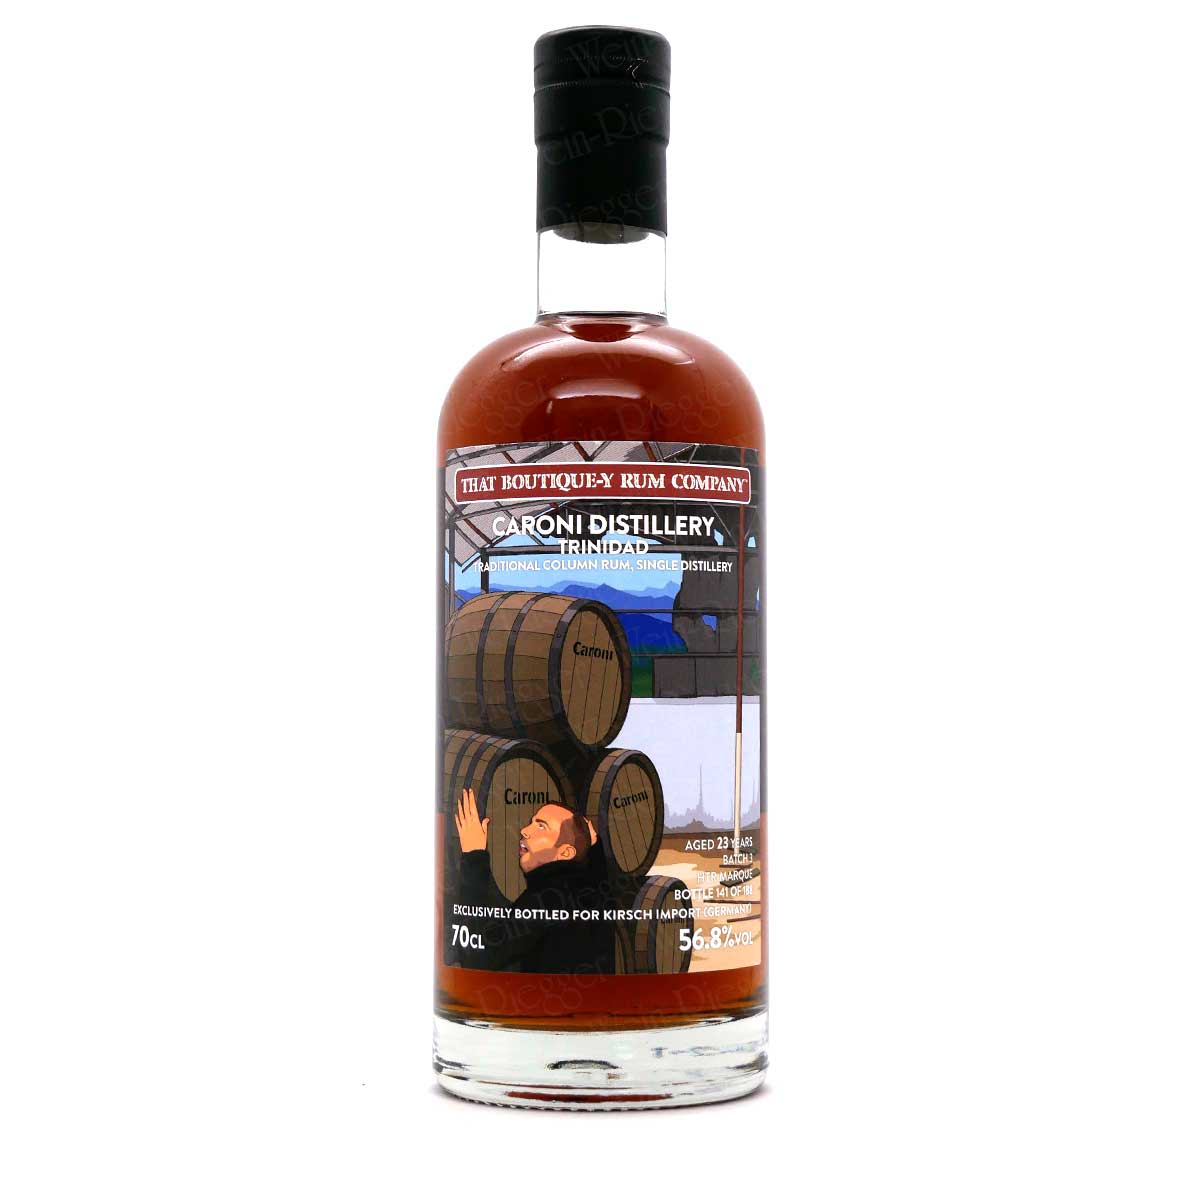 Caroni Distillery 23 Jahre Batch 3 Trinidad - That Boutique-Y Rum Company